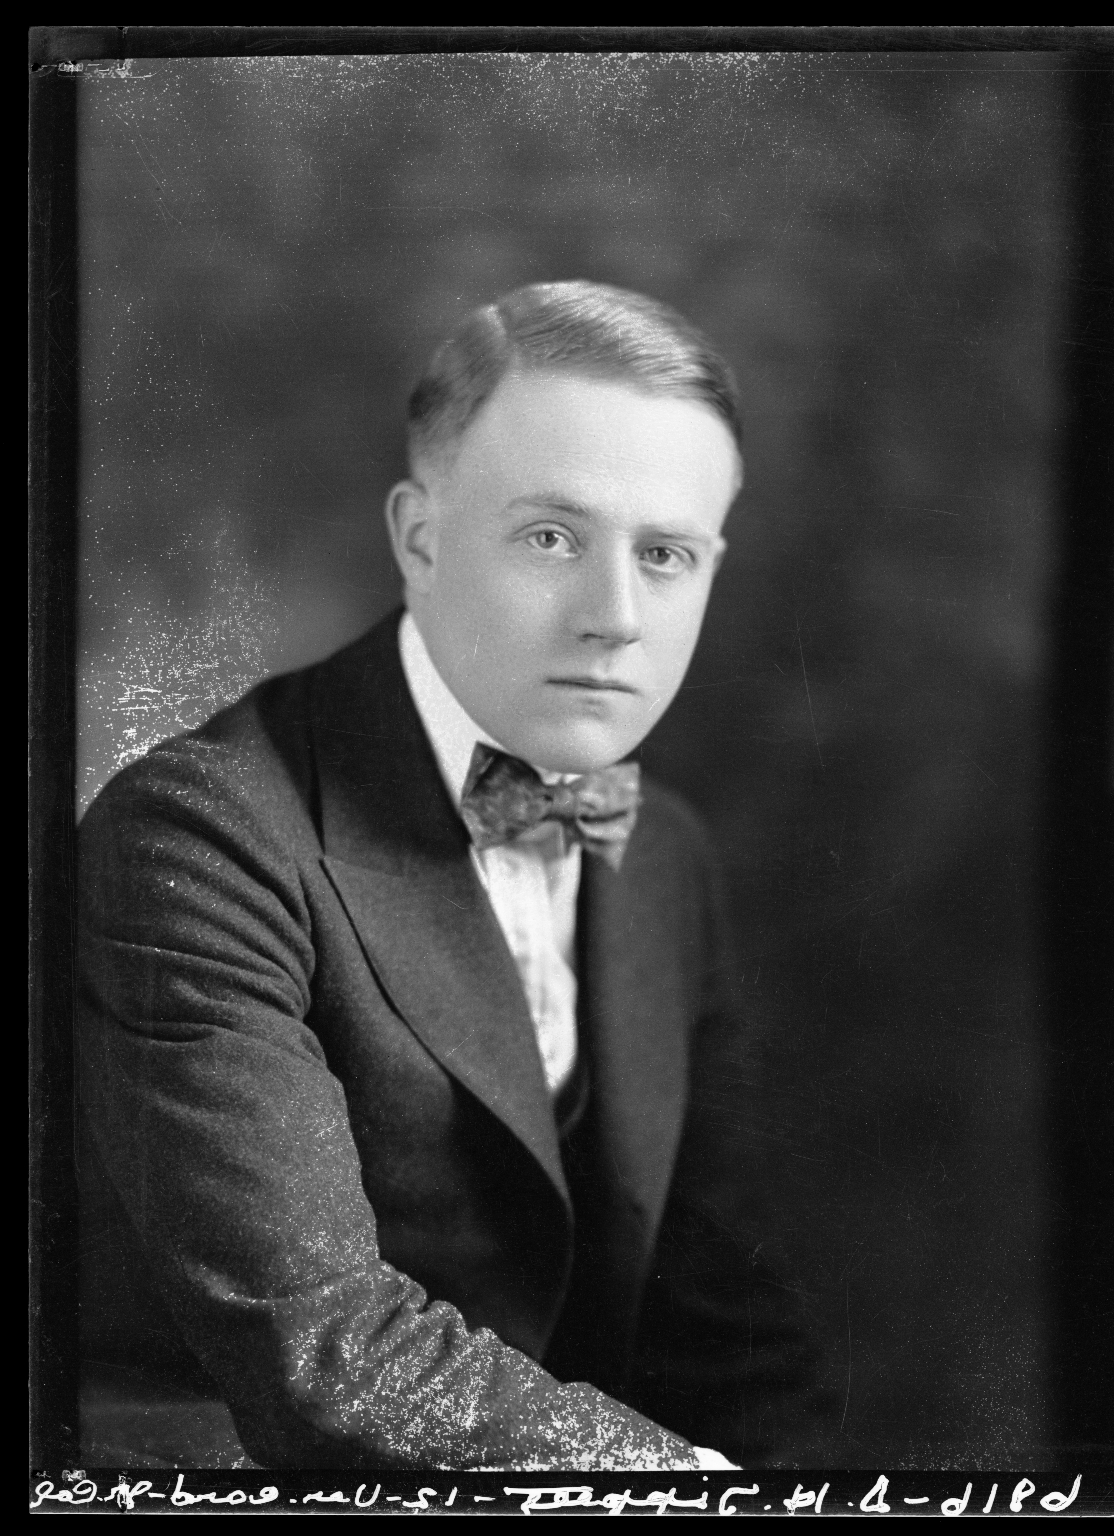 Portrait of D. H. Tippett